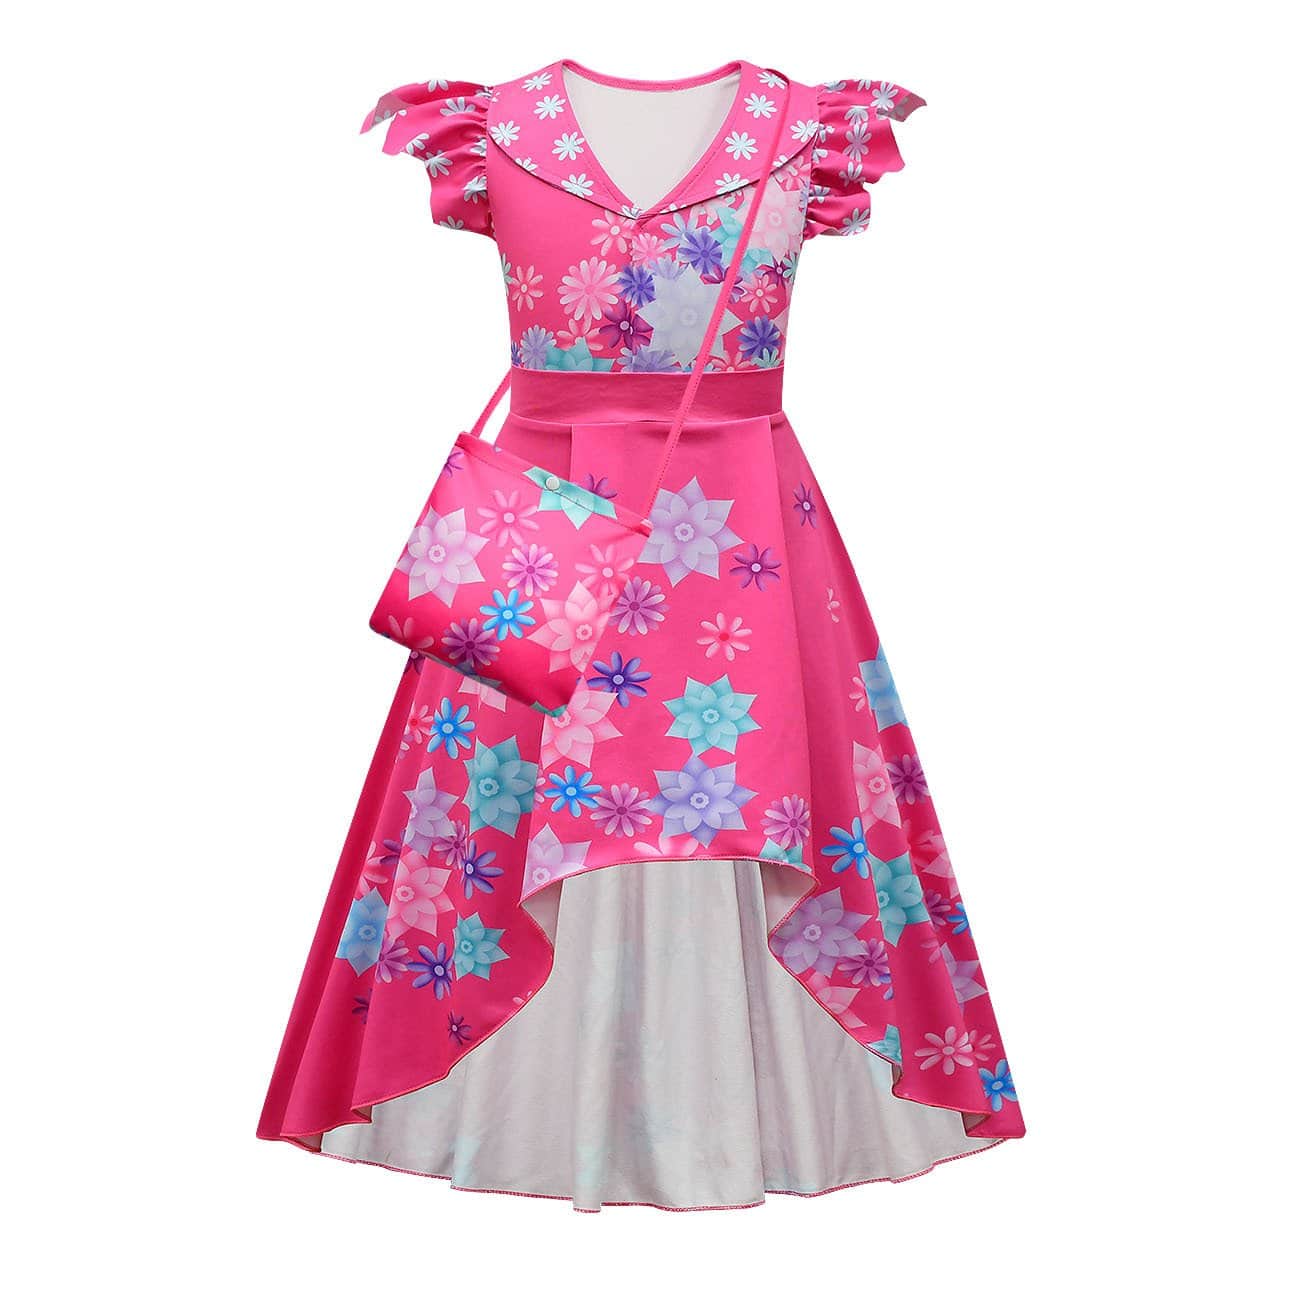 Encanto Isabela Dress Floral High Low Dress with Bag - 80685rose red+bag